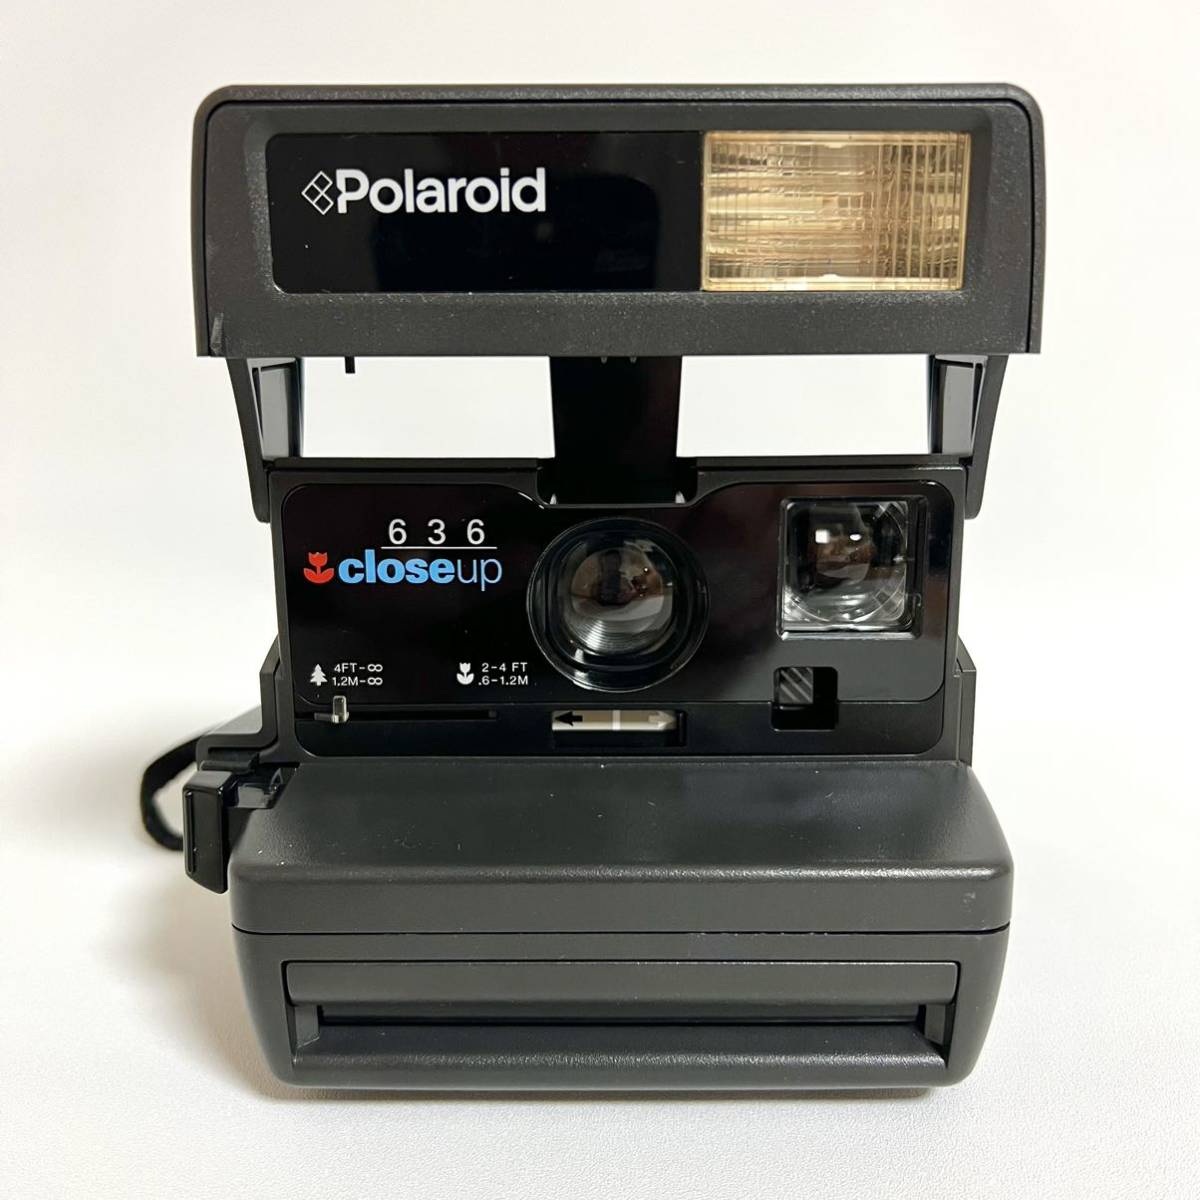 Polaroid ポラロイド クローズアップ closeup 636 フィルムカメラ